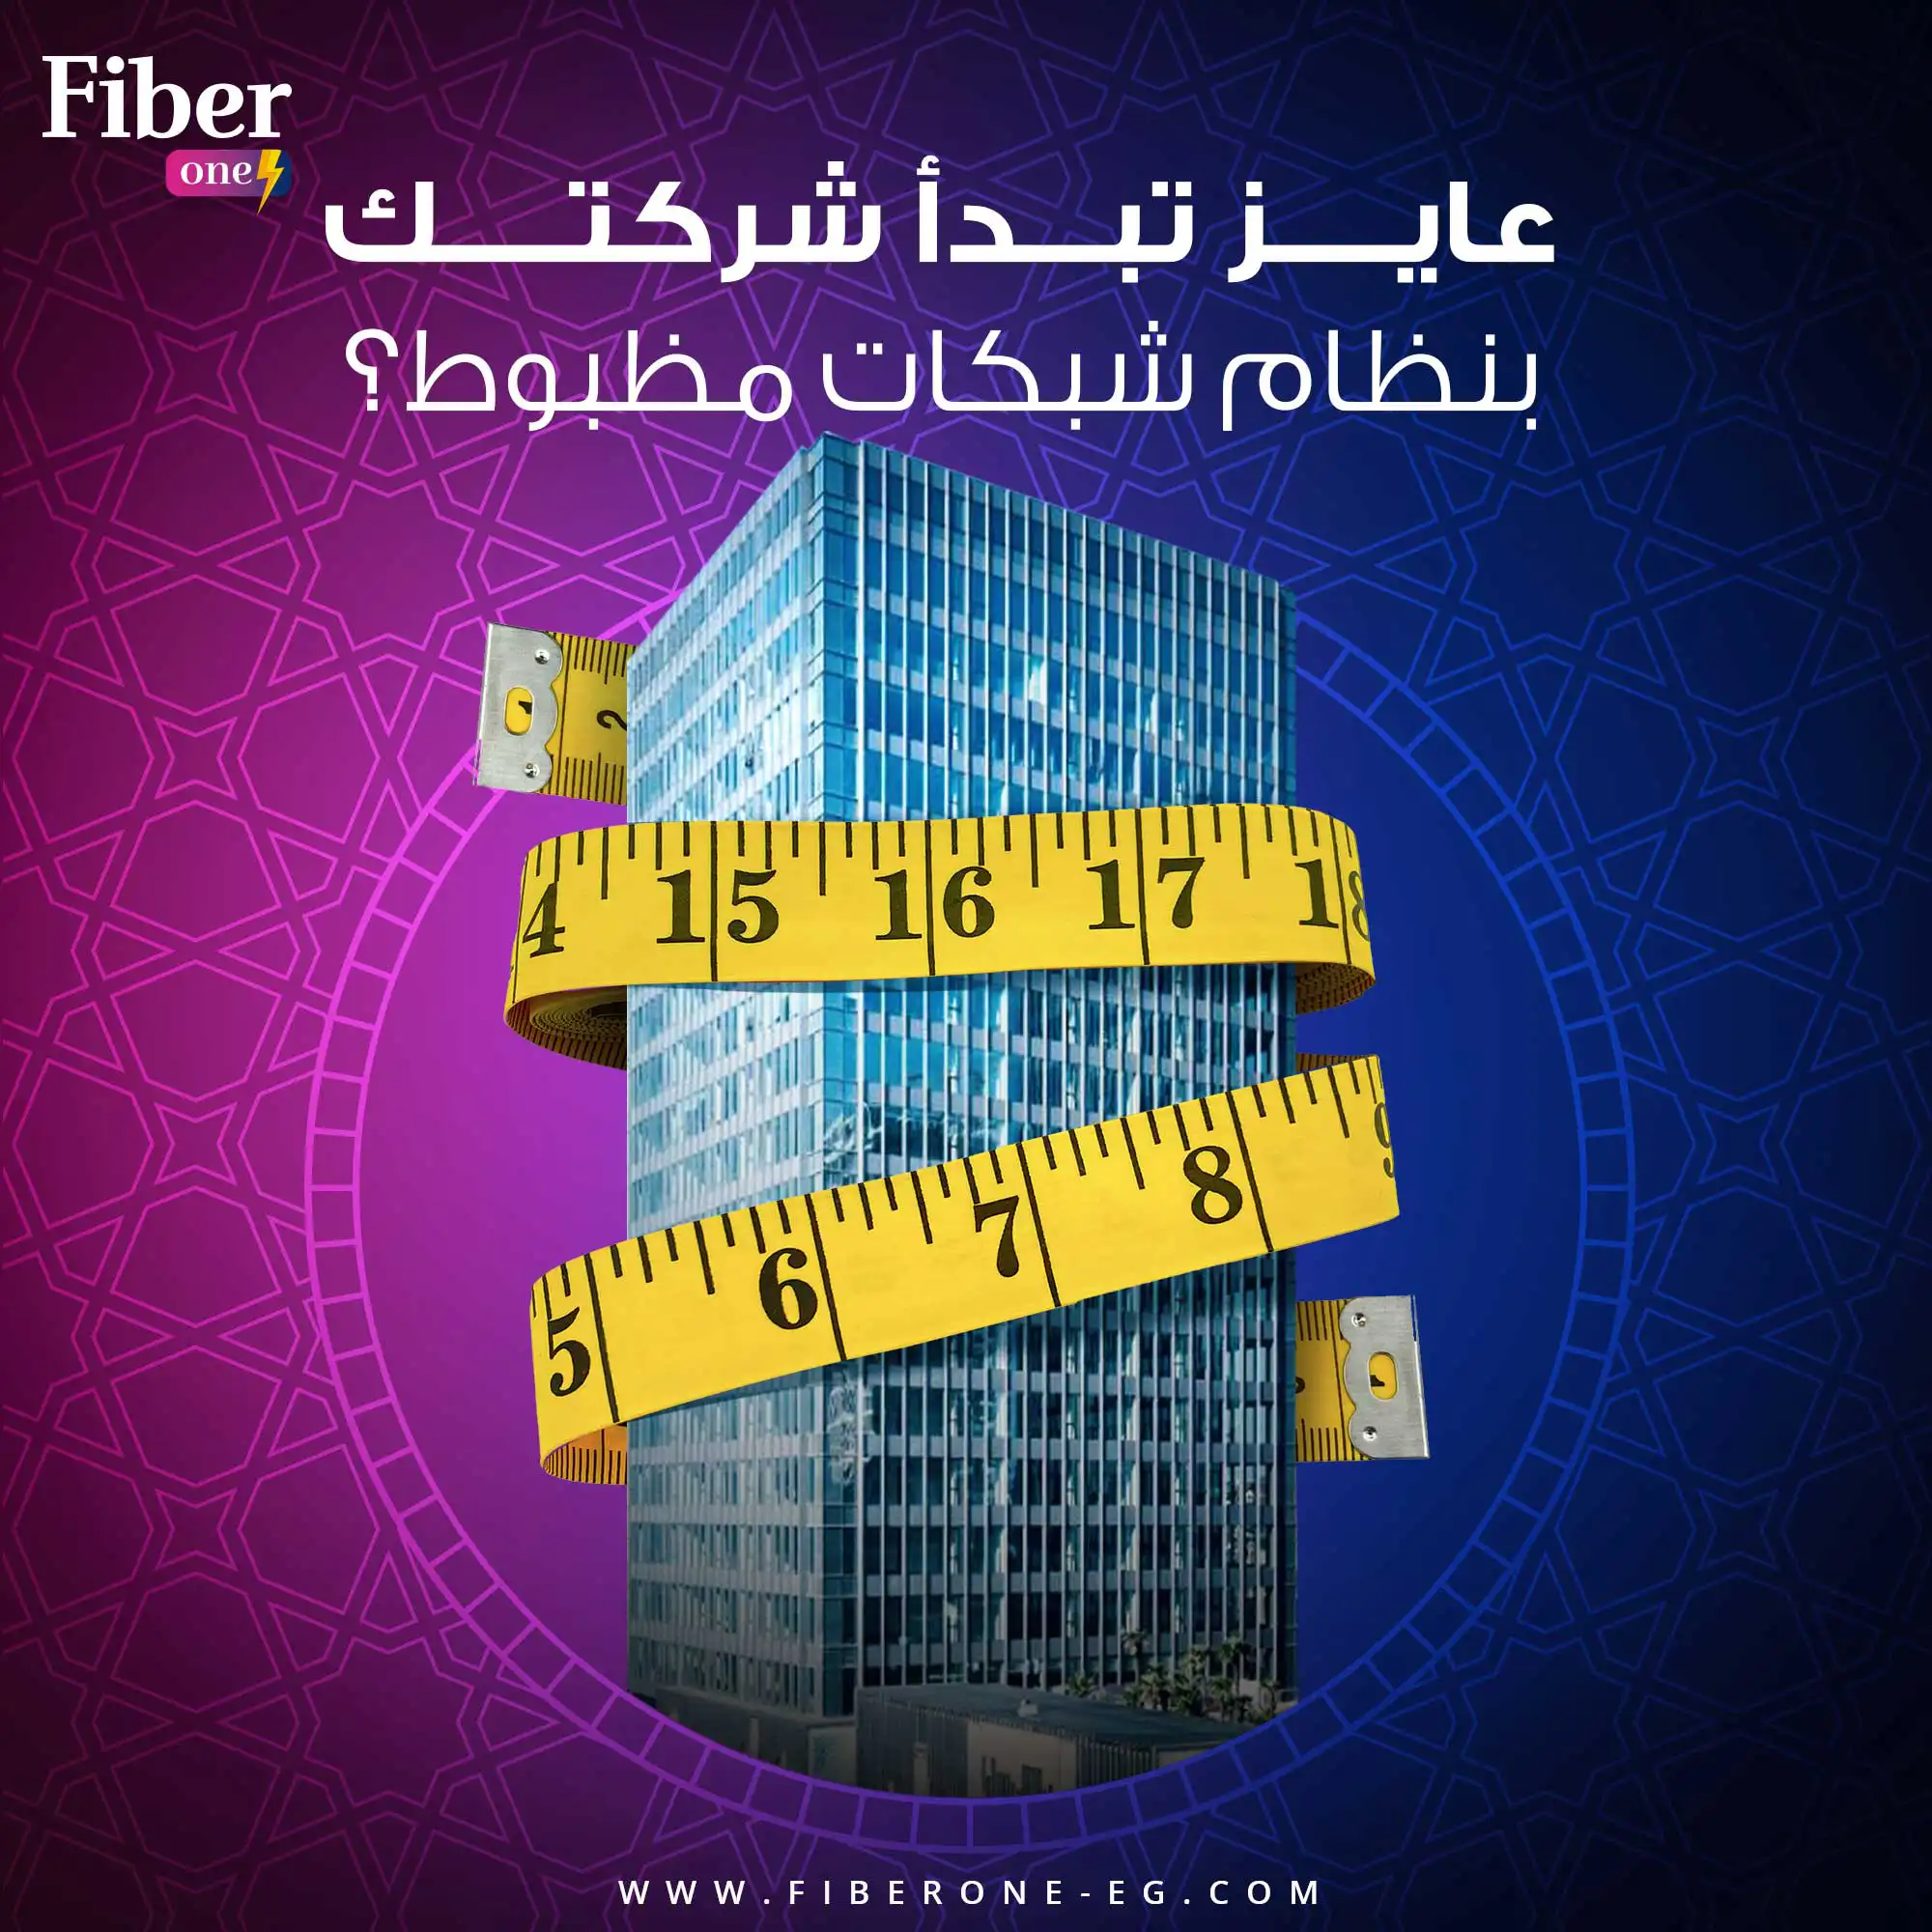 fiber one social media 14